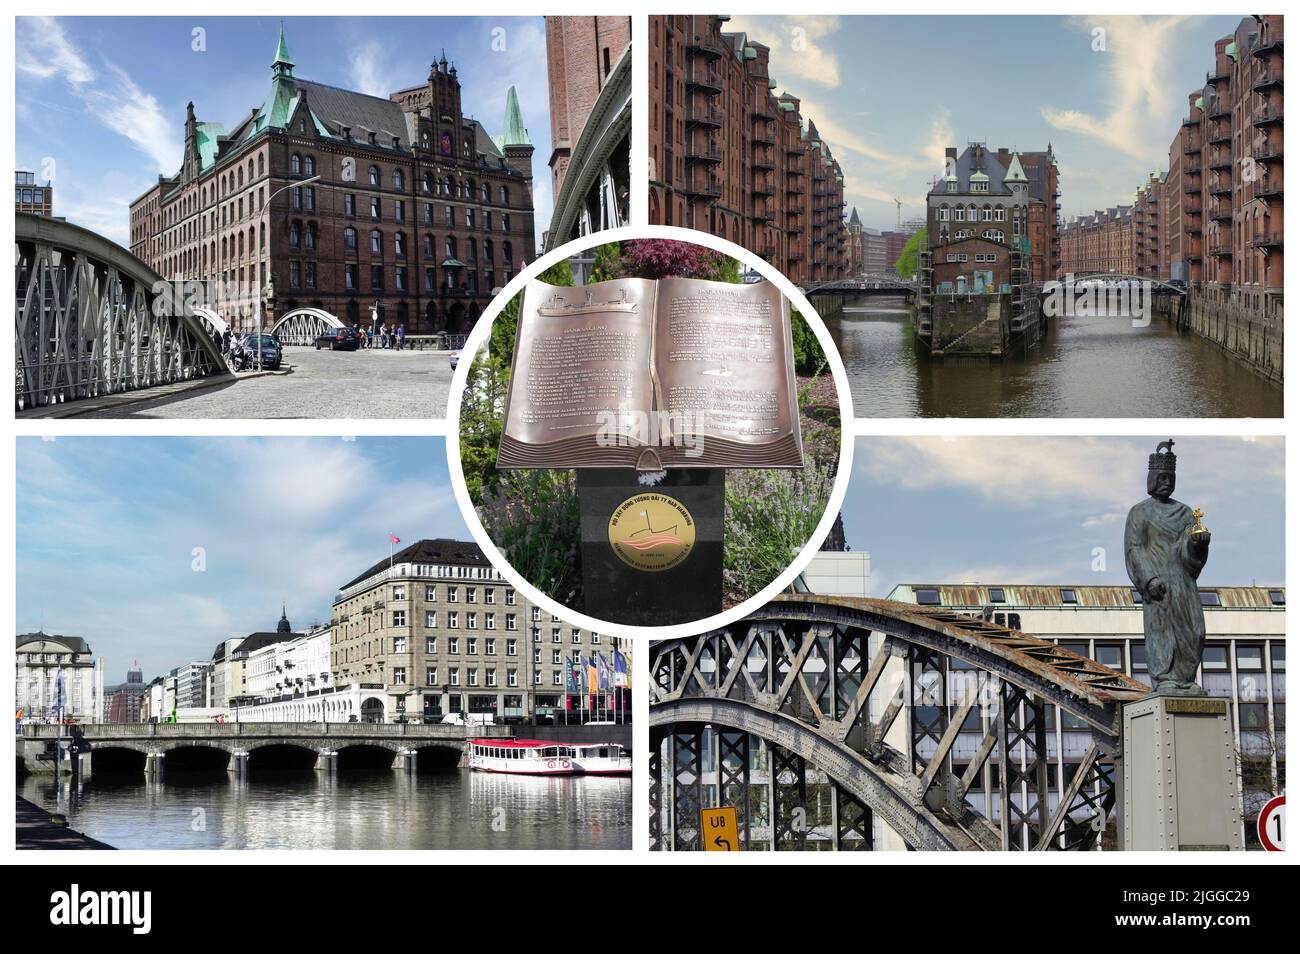 Hambourg, l'une des plus importantes villes portuaires d'Allemagne, est traversée par des centaines de canaux, et abrite de nombreux parcs et monuments historiques Banque D'Images